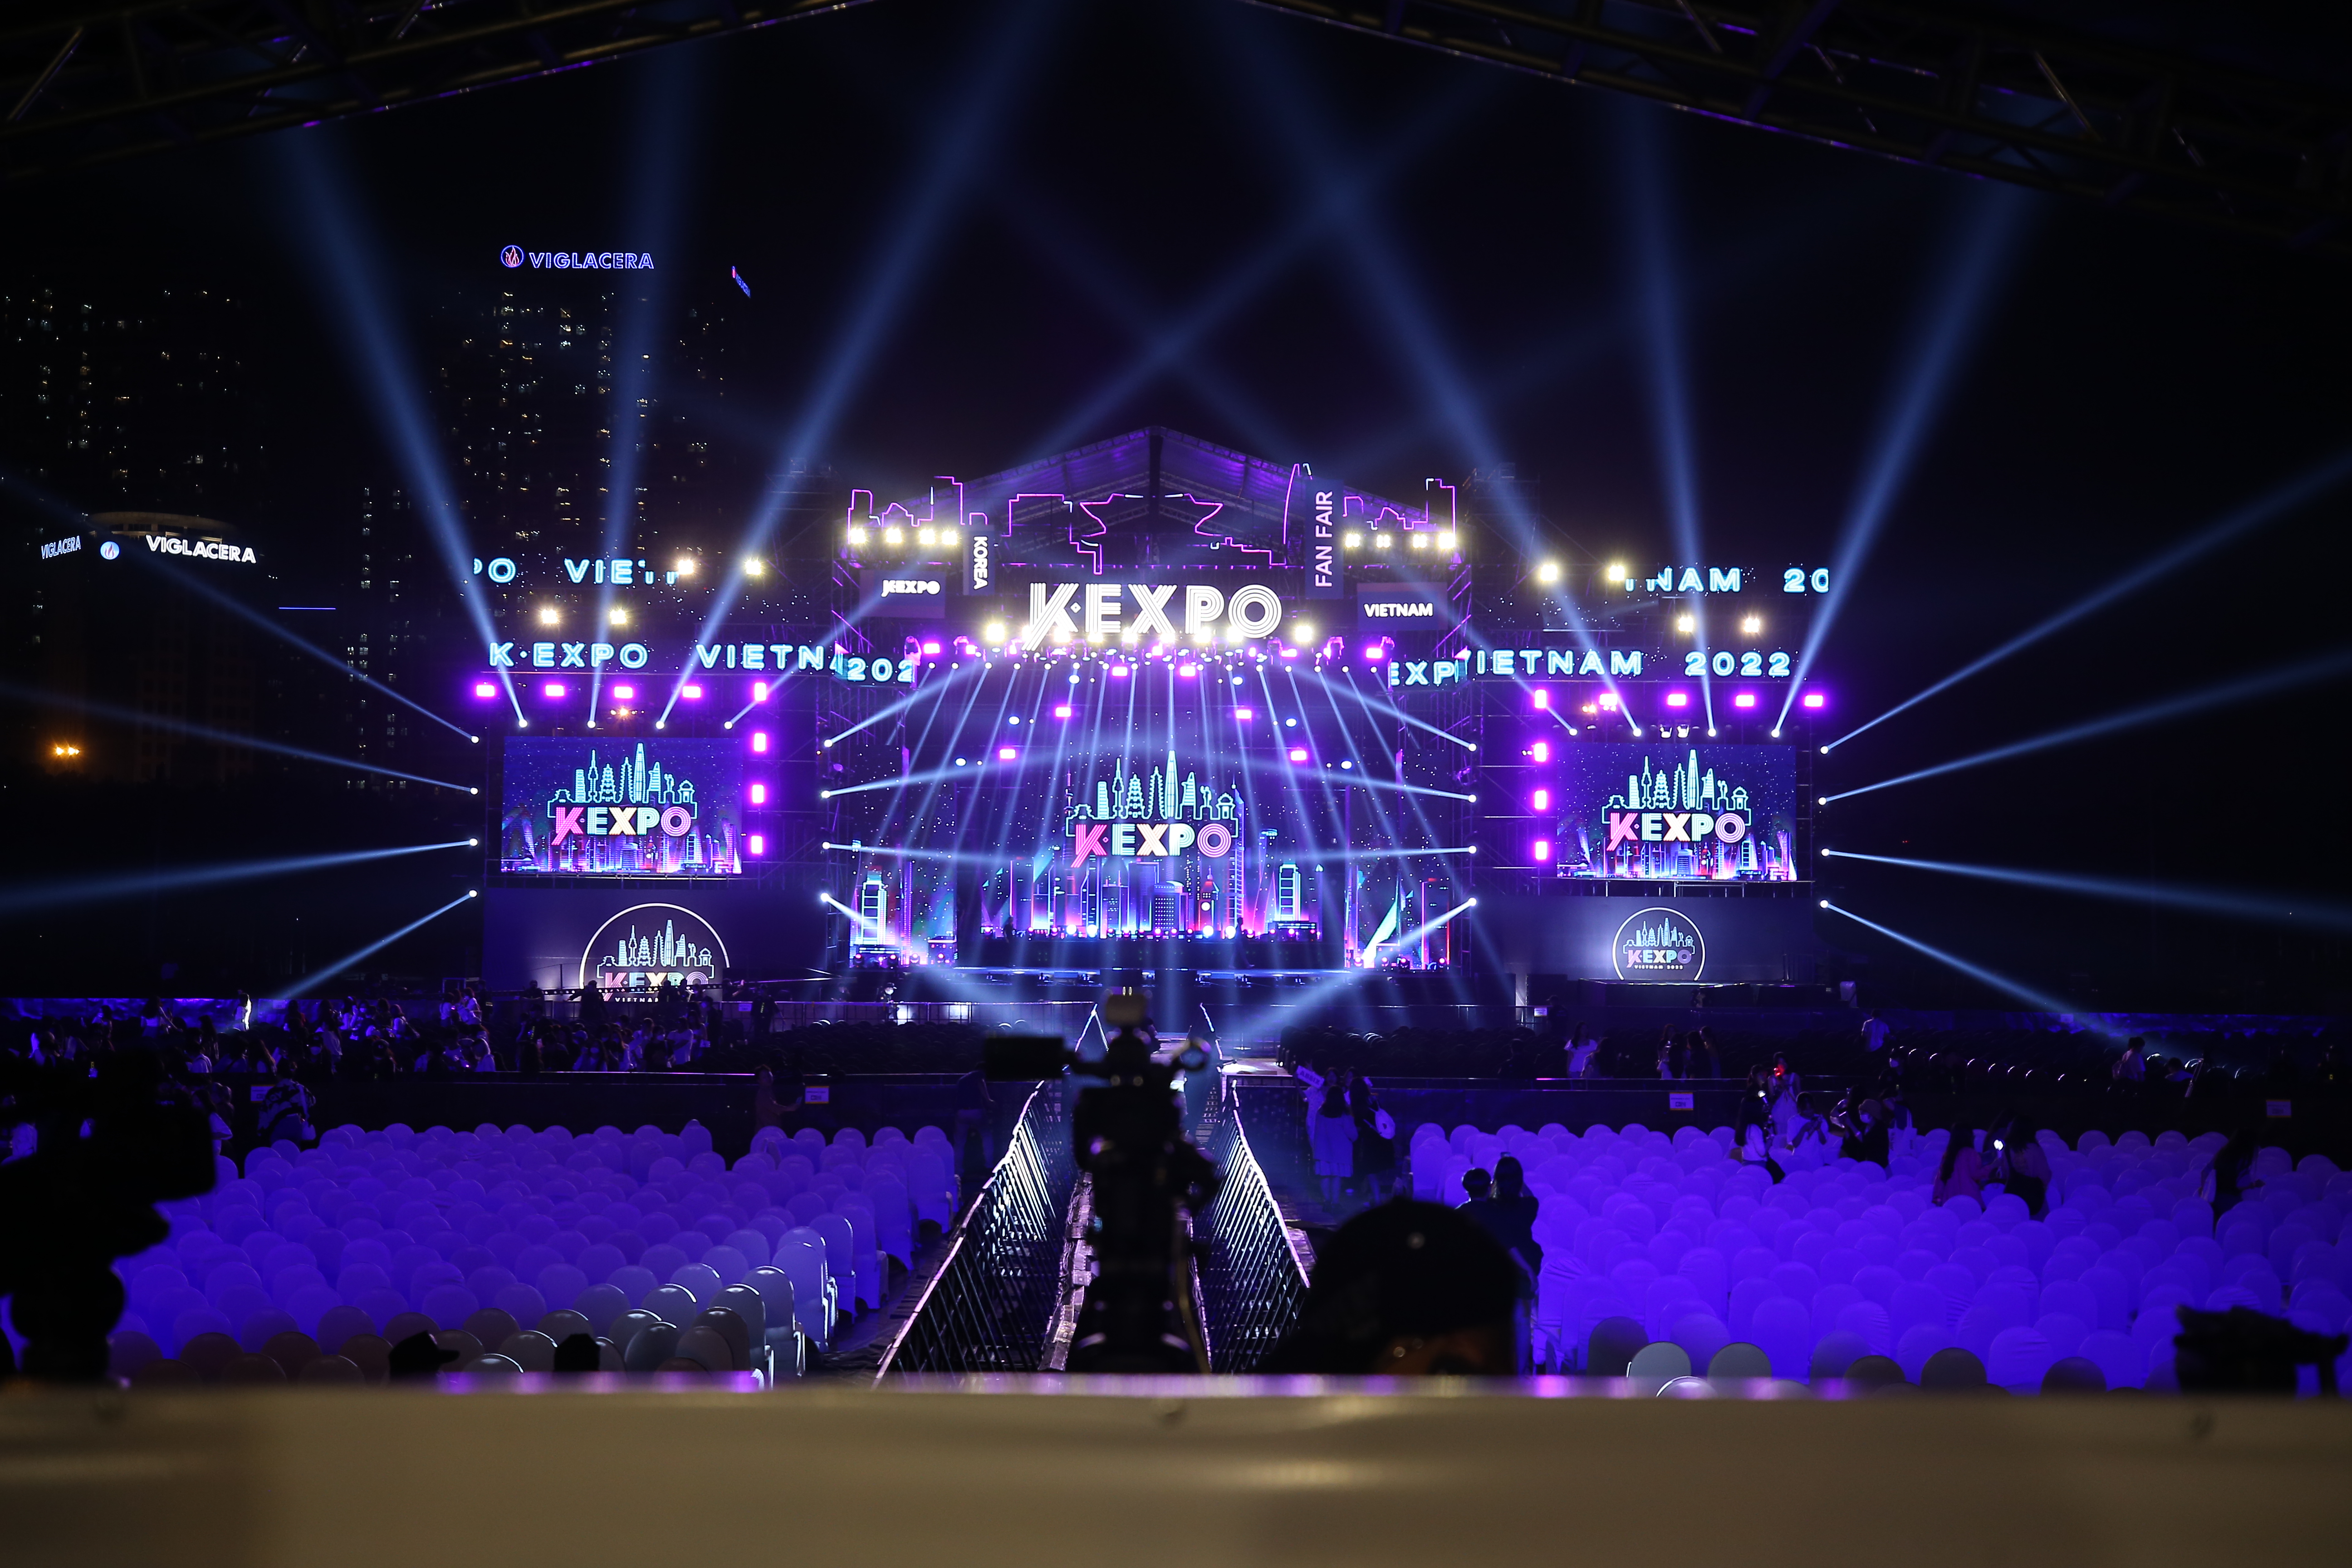 Sân khấu K-EXPO Concert được setup hoành tráng nhằm thể hiện tầm cỡ của sự kiện